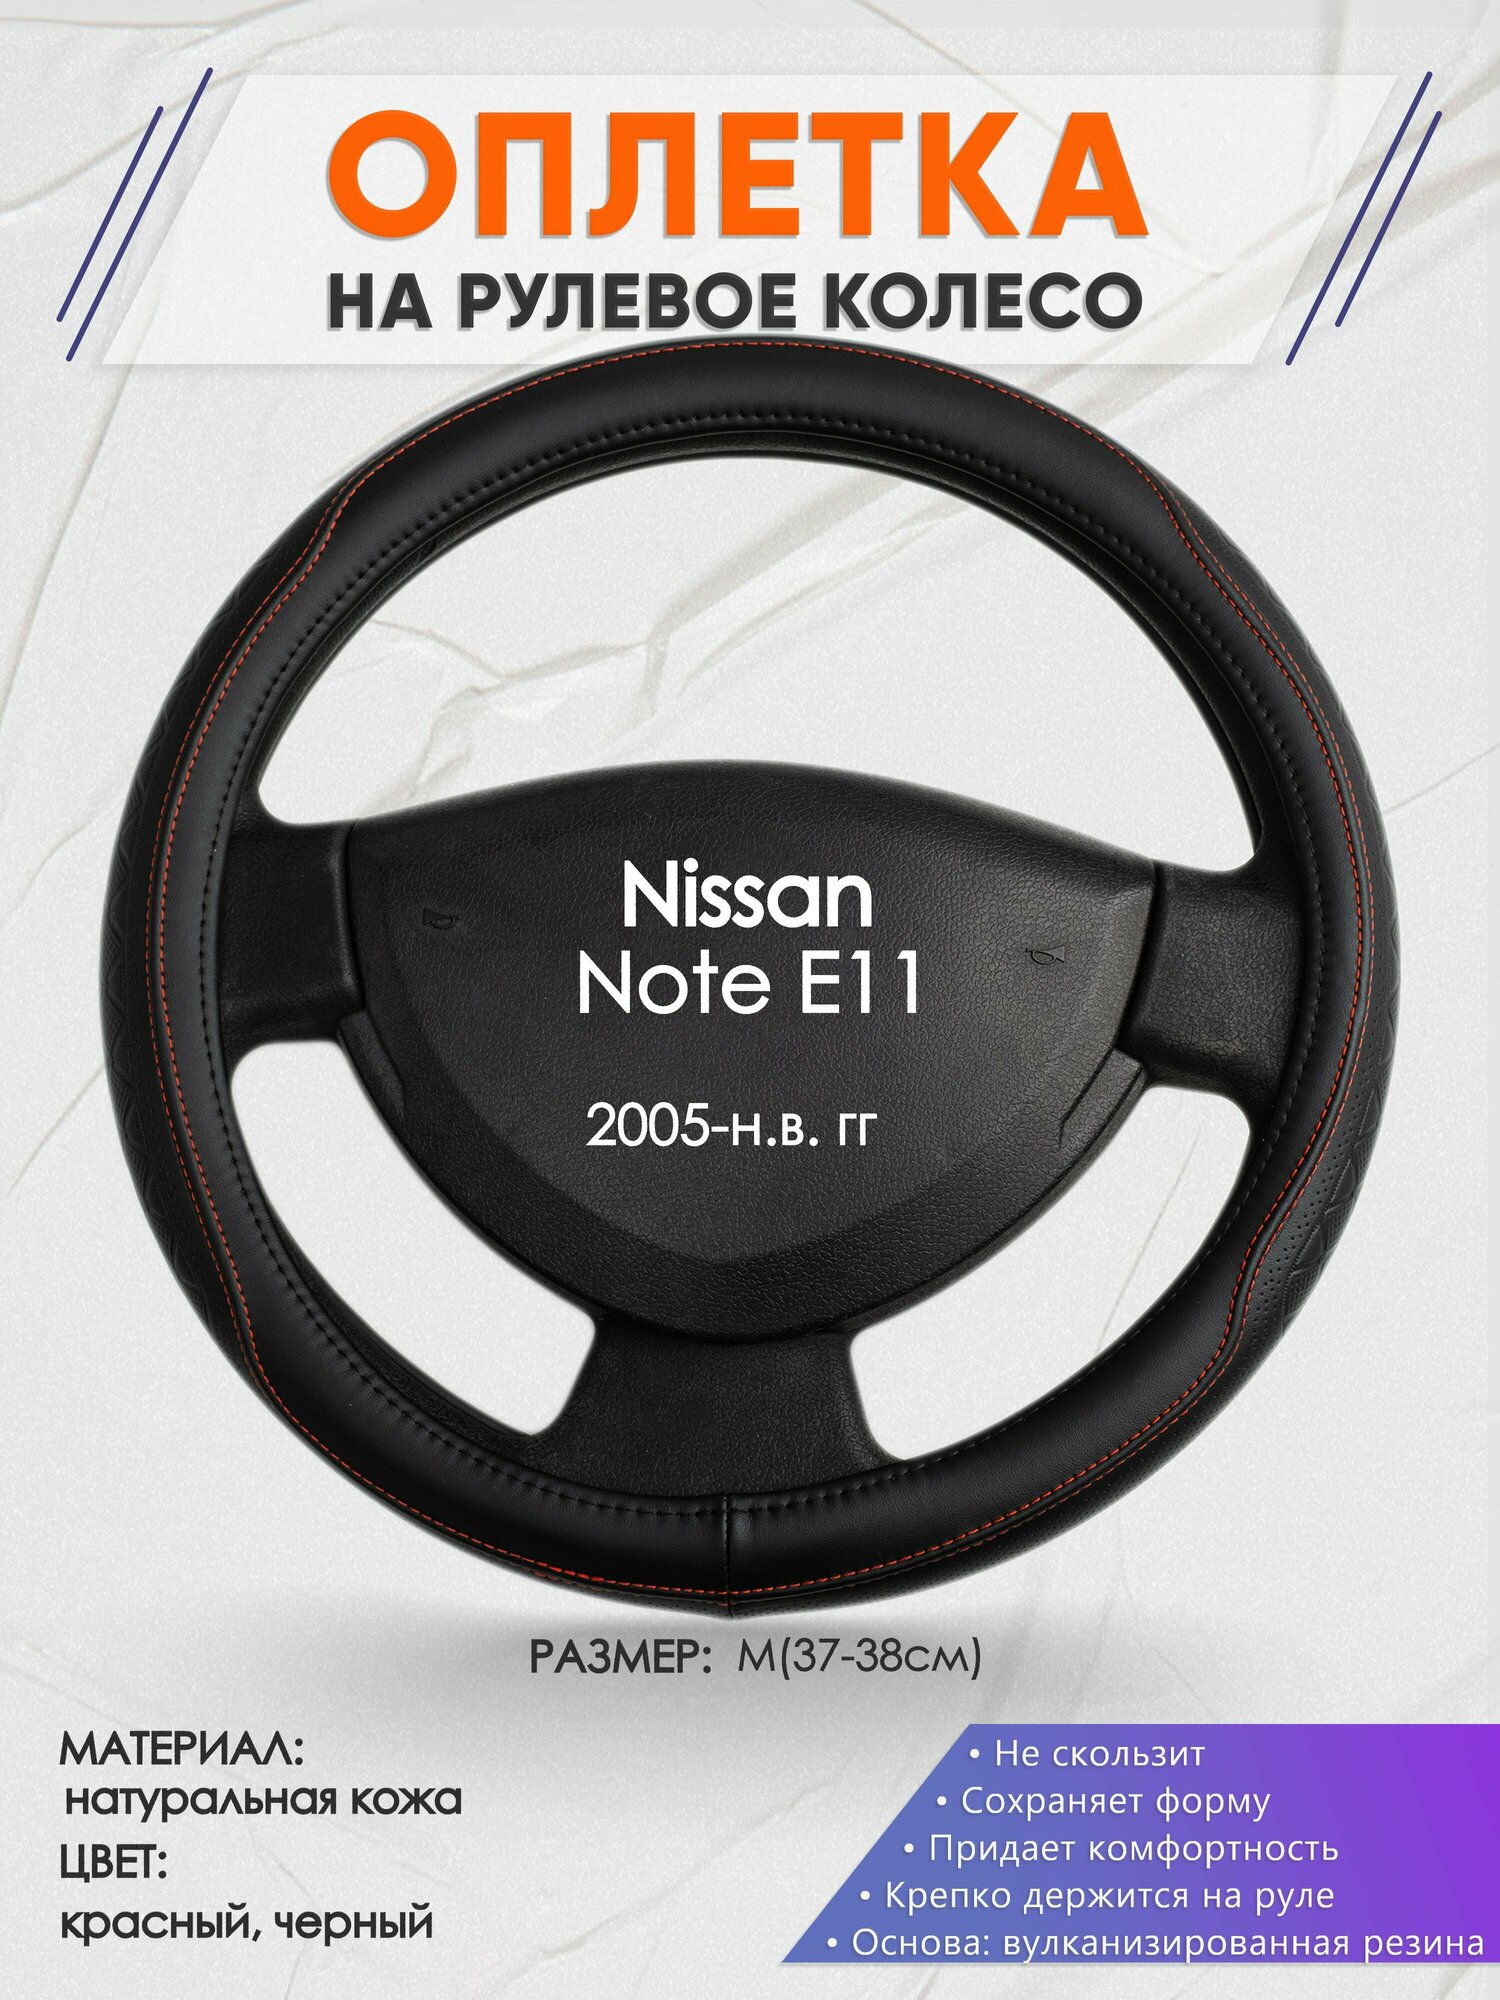 Оплетка на руль для Nissan Note E11(Ниссан Ноут) 2005-н. в, M(37-38см), Натуральная кожа 90